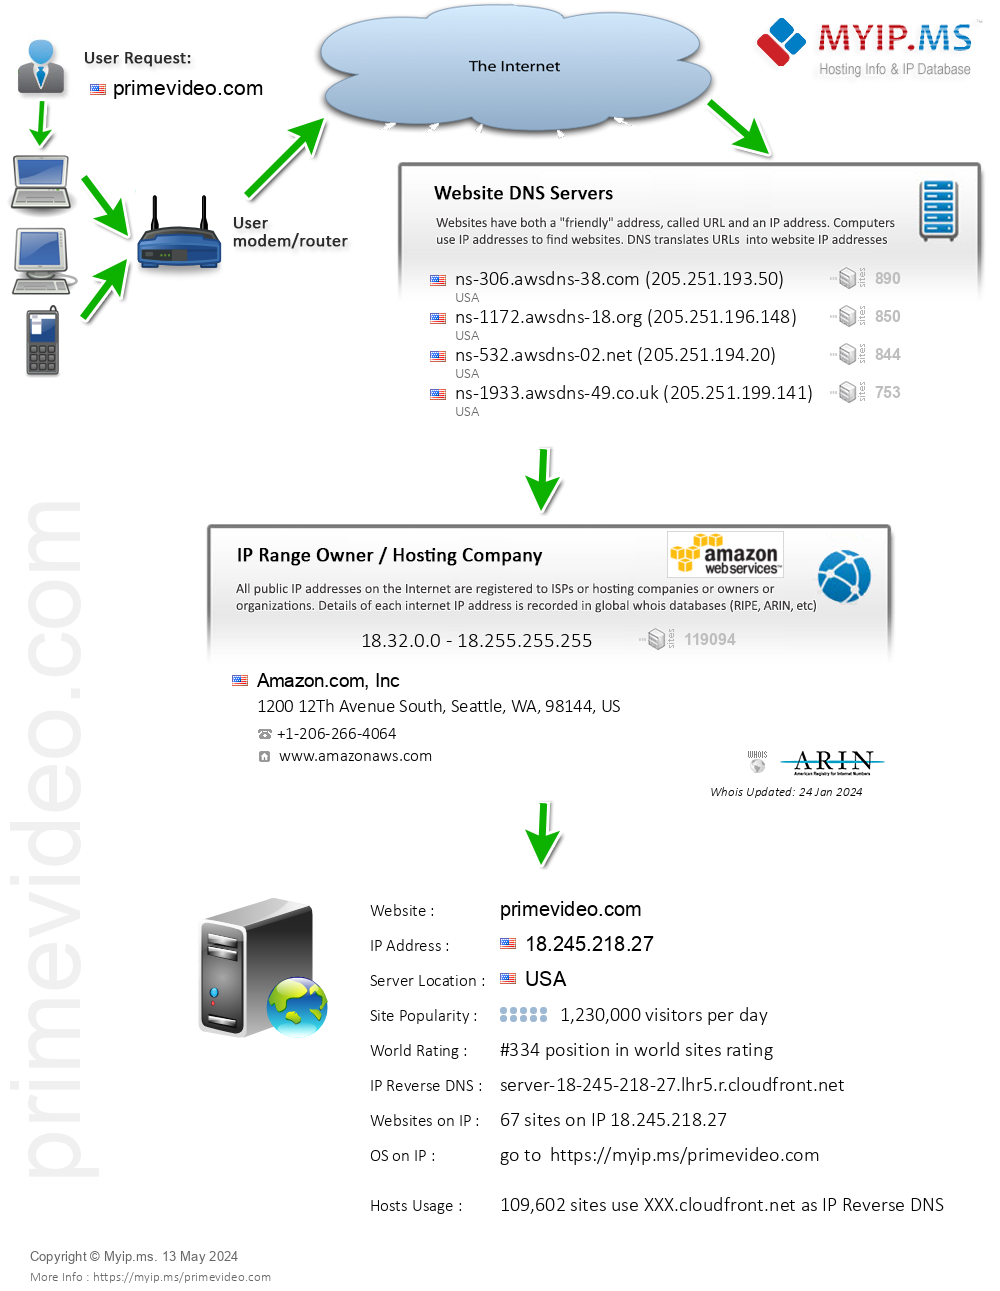 Primevideo.com - Website Hosting Visual IP Diagram